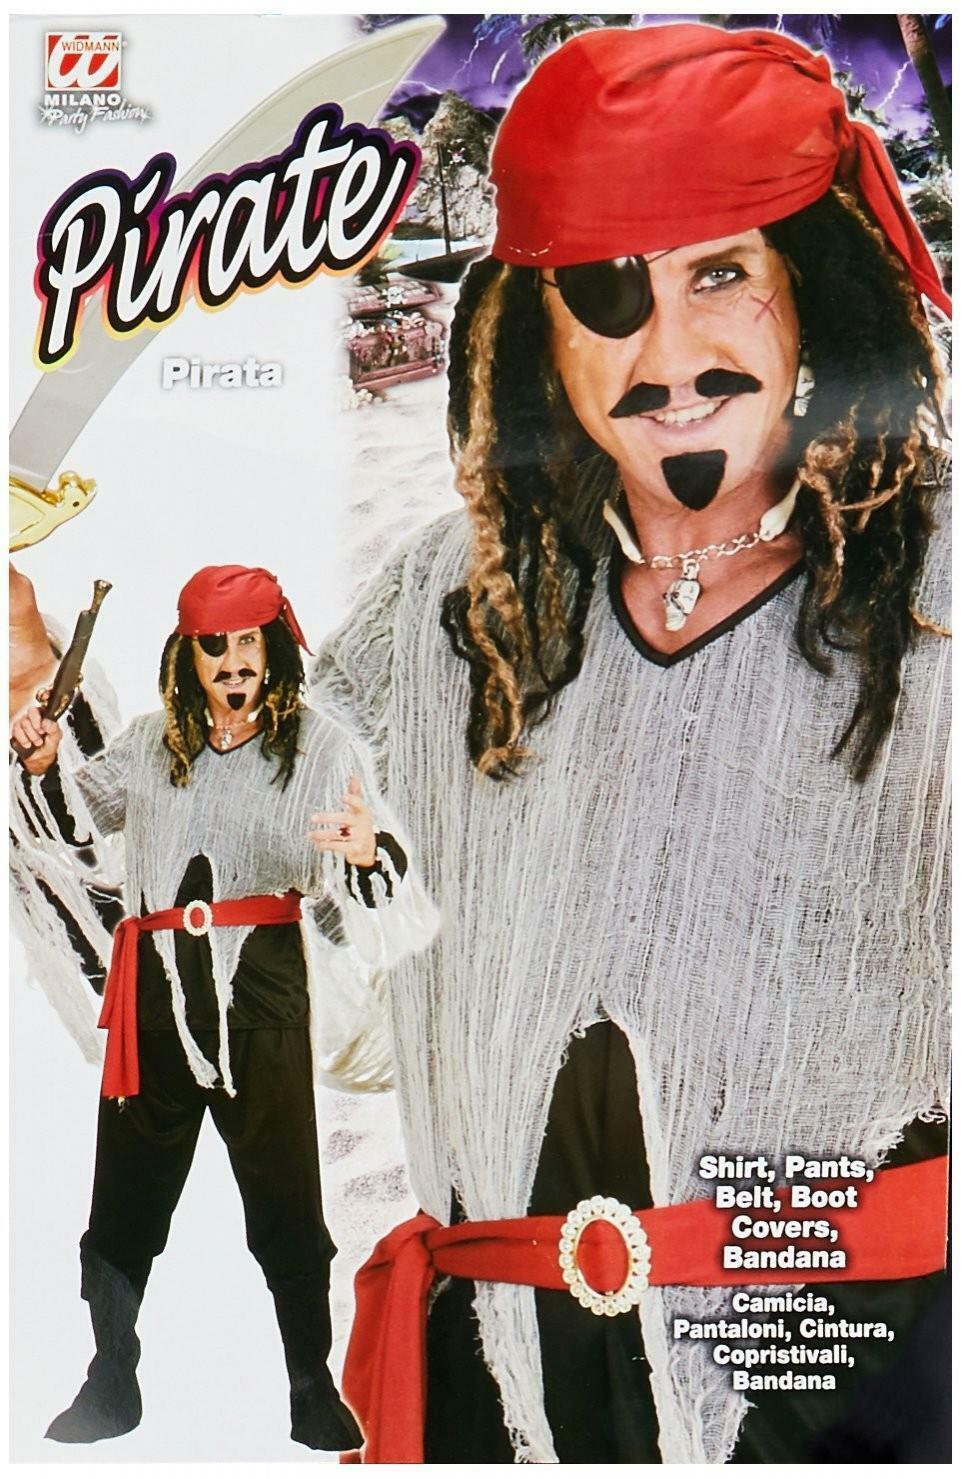 widmann widmann costume pirata taglia l